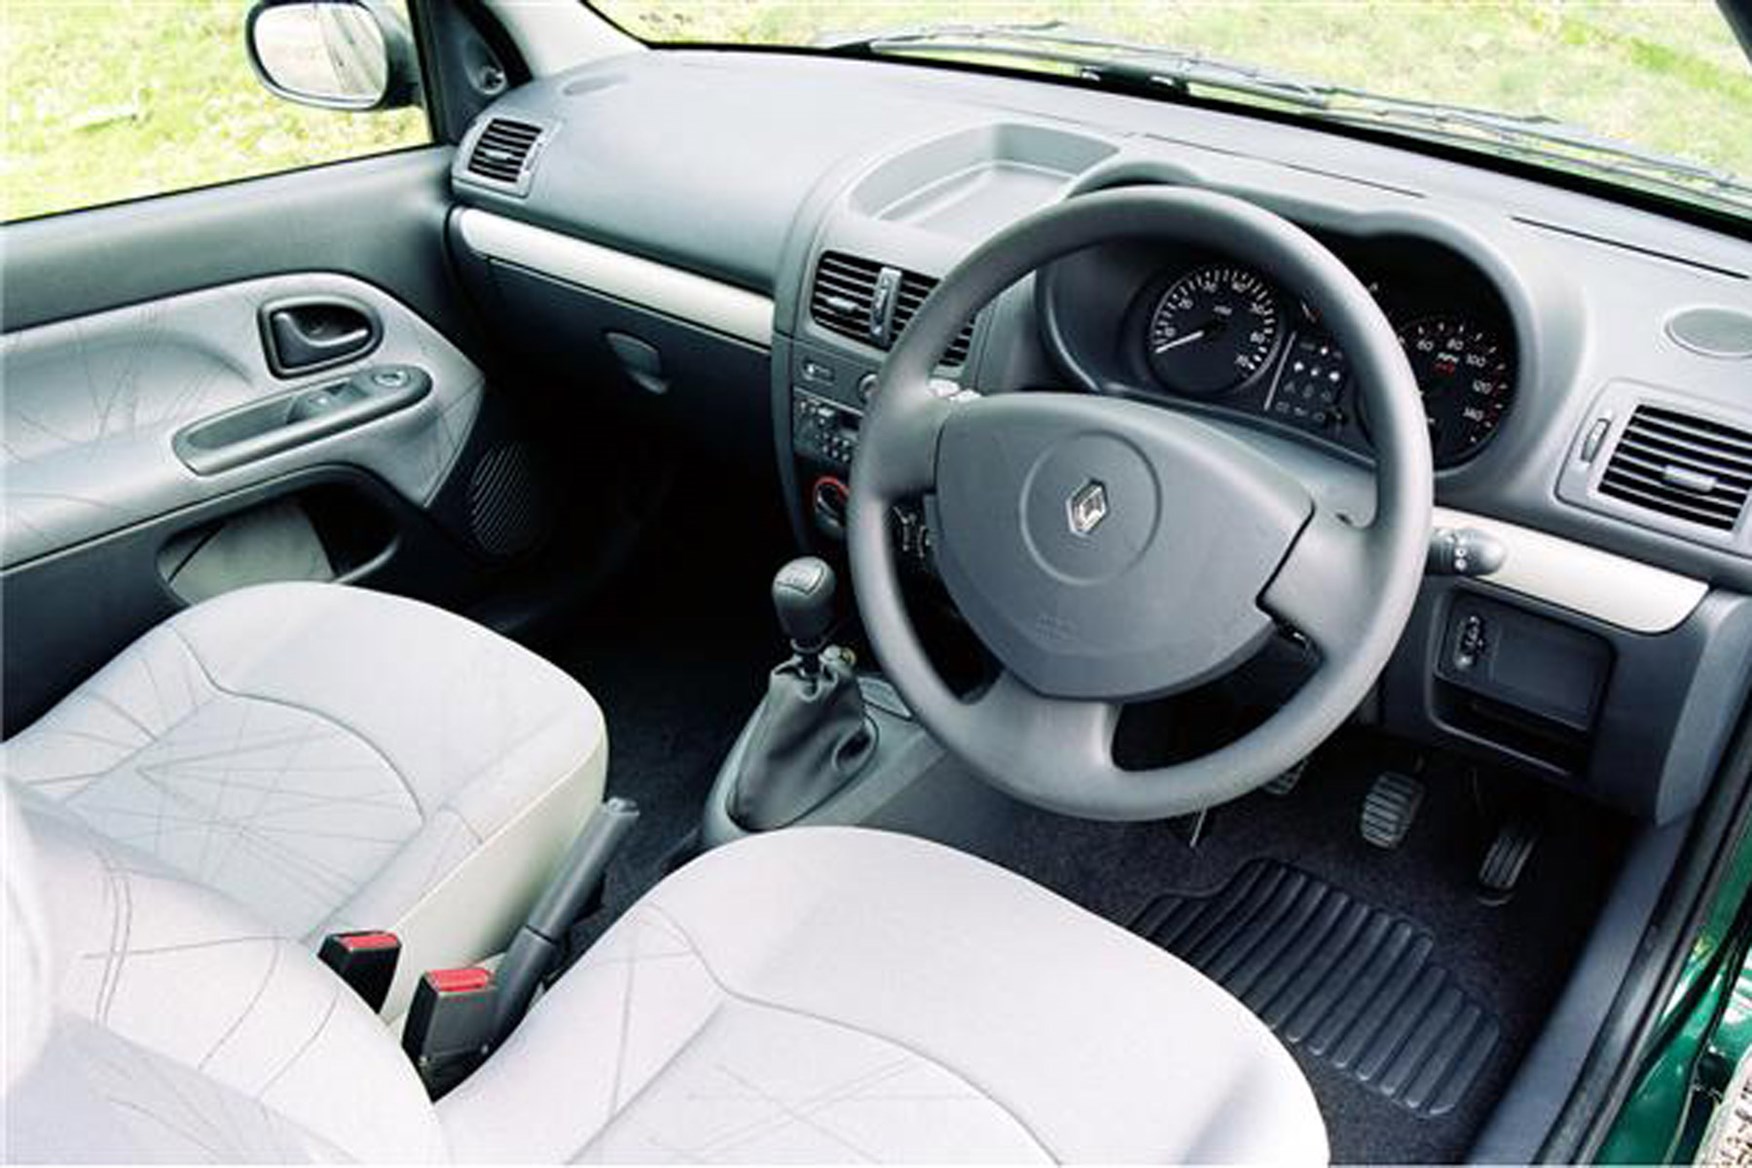 Renault Clio Van review on Parkers Vans - interior